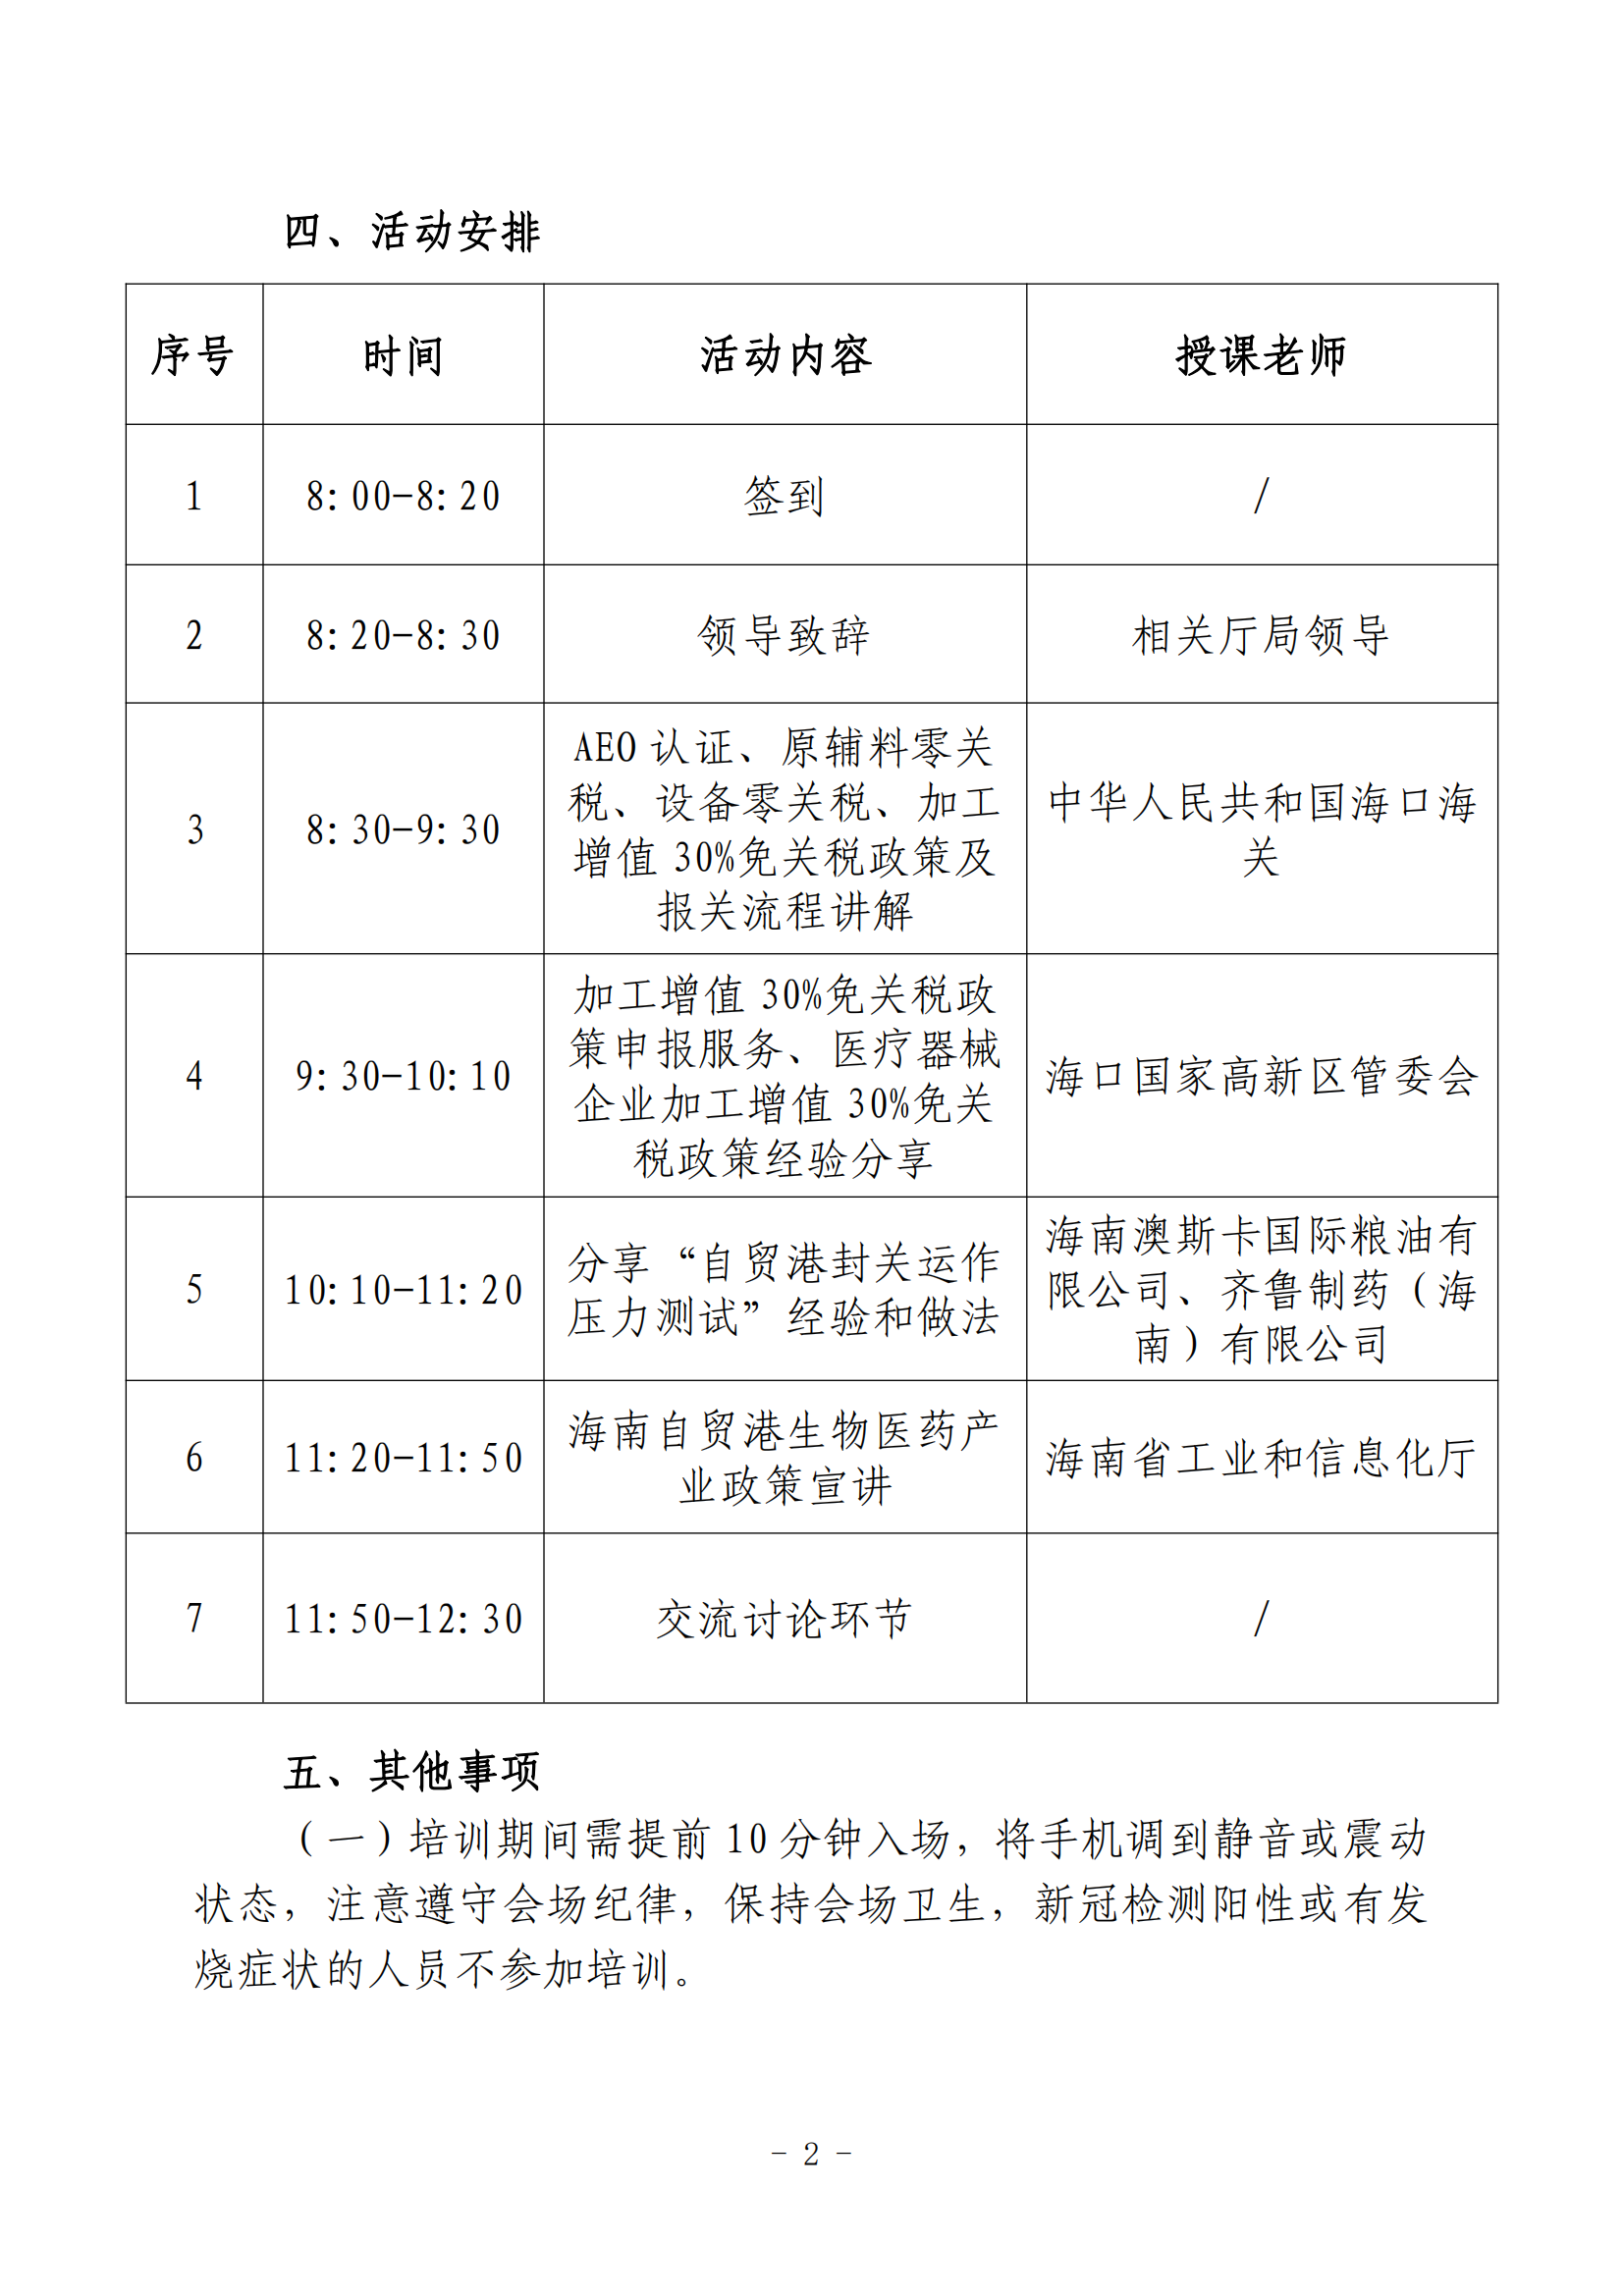 九游会j9官网自贸港生物医药产业政策宣讲活动的通知_01.png